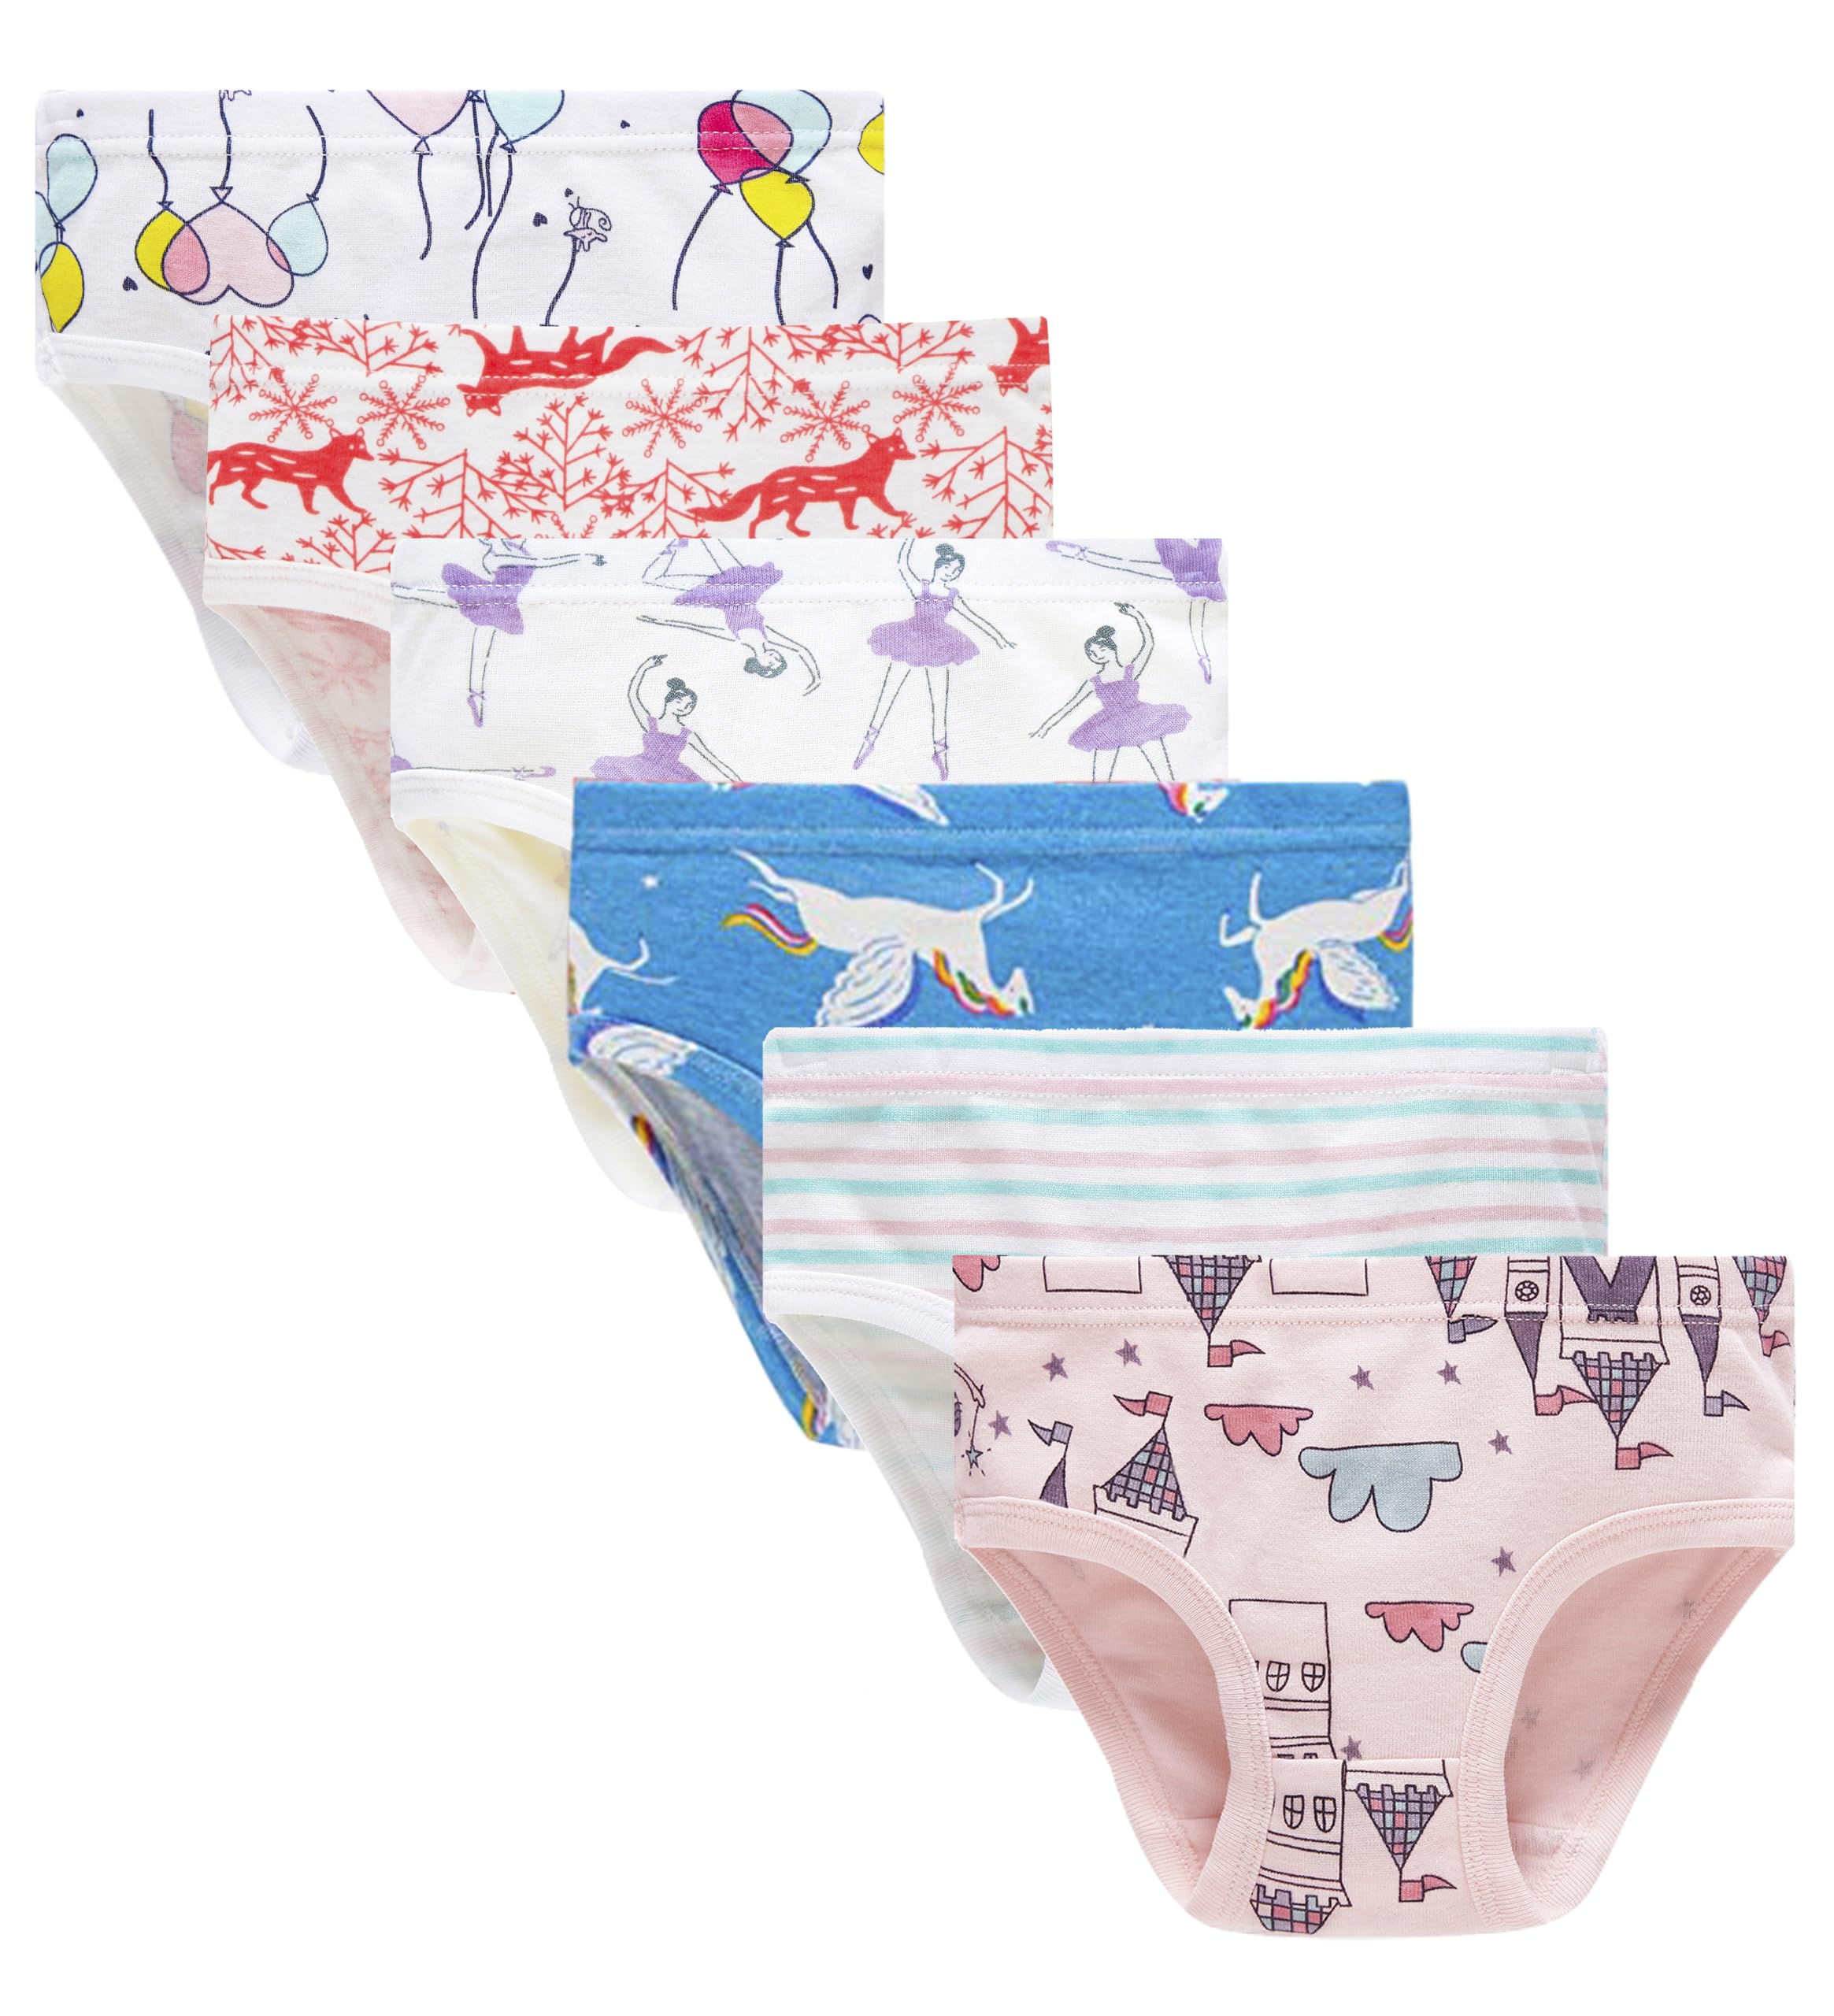 Cadidi Dinos Baby Soft Cotton Underwear Little Girls'Briefs Toddler Undies